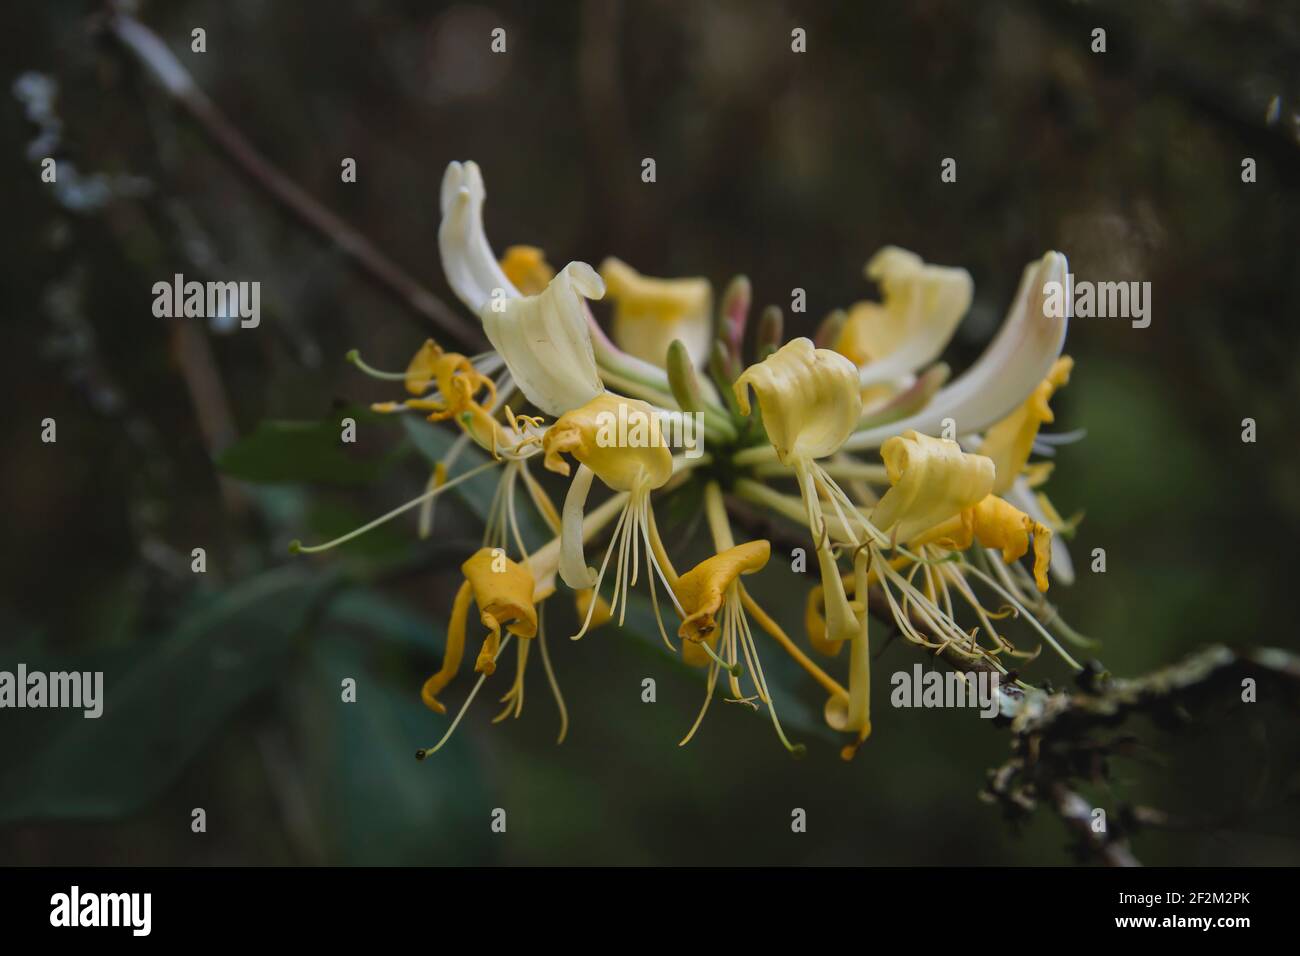 Detail of wild honeysuckle yellow flower blooming Stock Photo